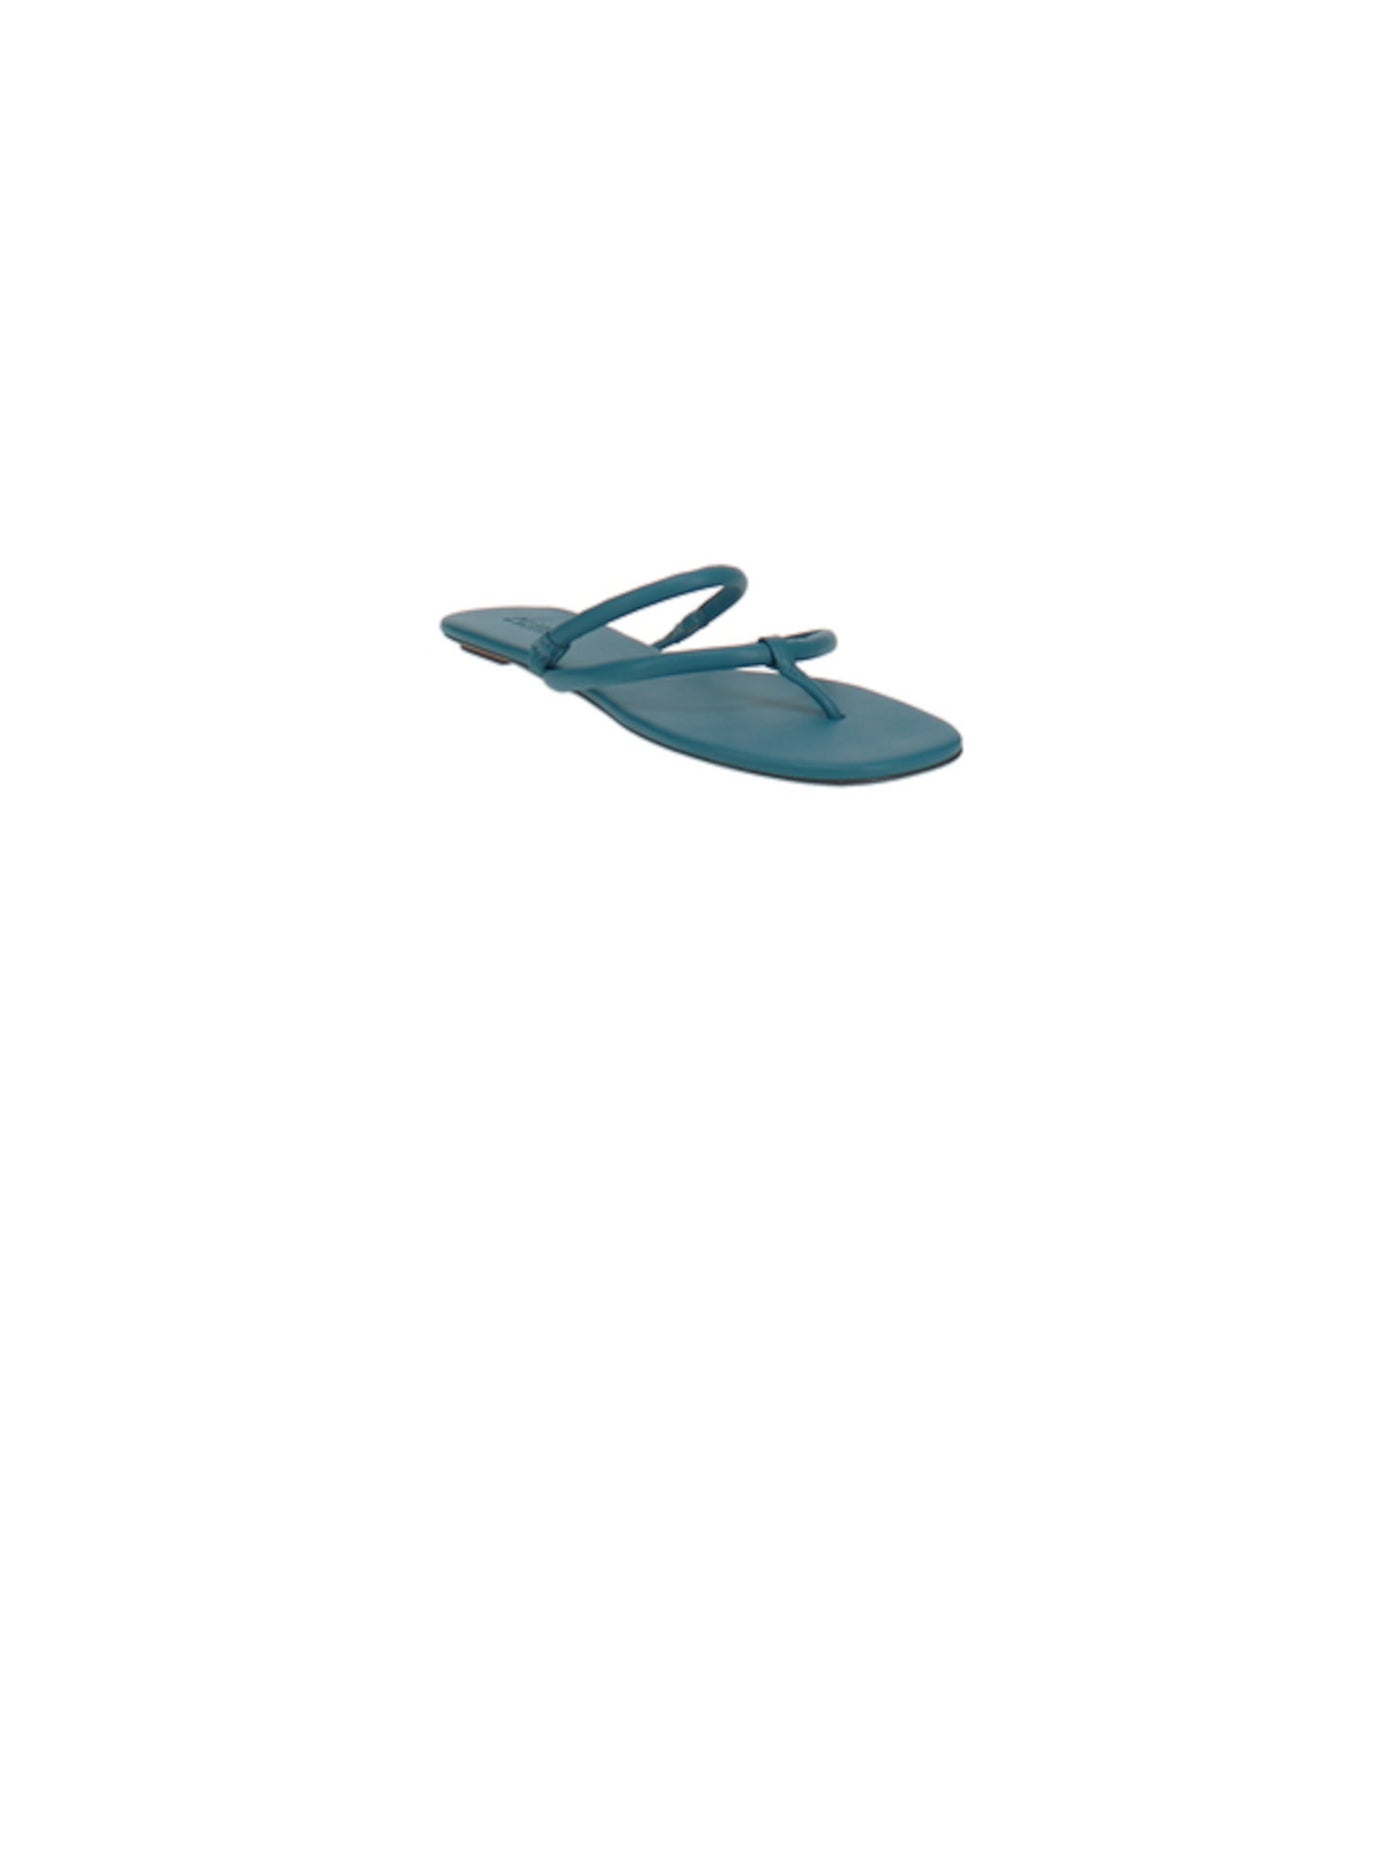 SCHUTZ Womens Teal Strappy Comfort Sitara Round Toe Slip On Flip Flop Sandal 10 B